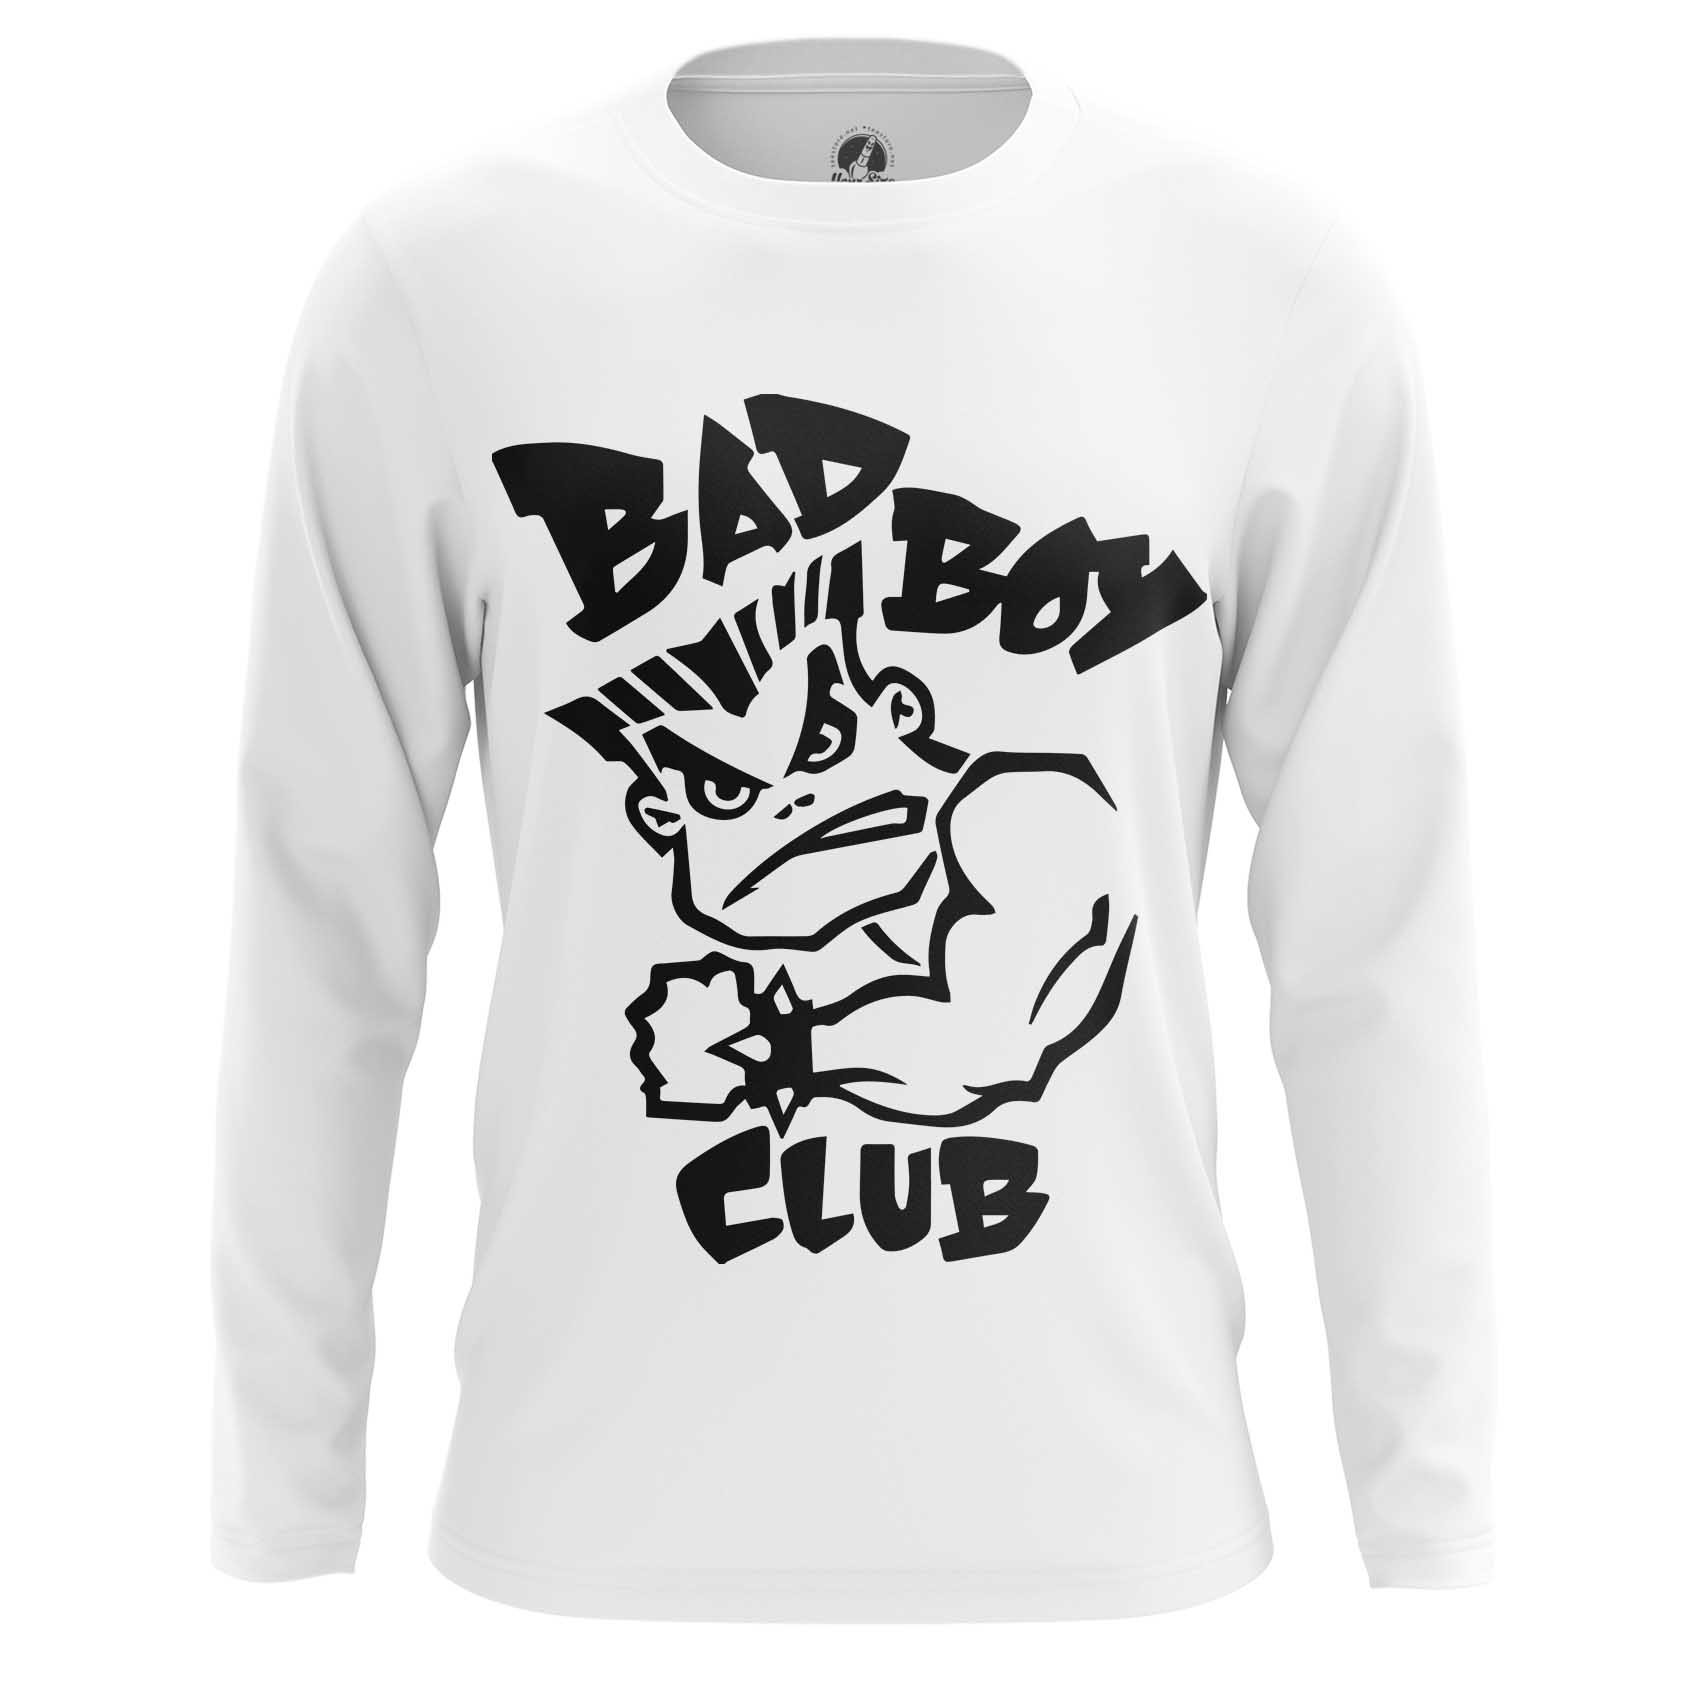 bad boys club